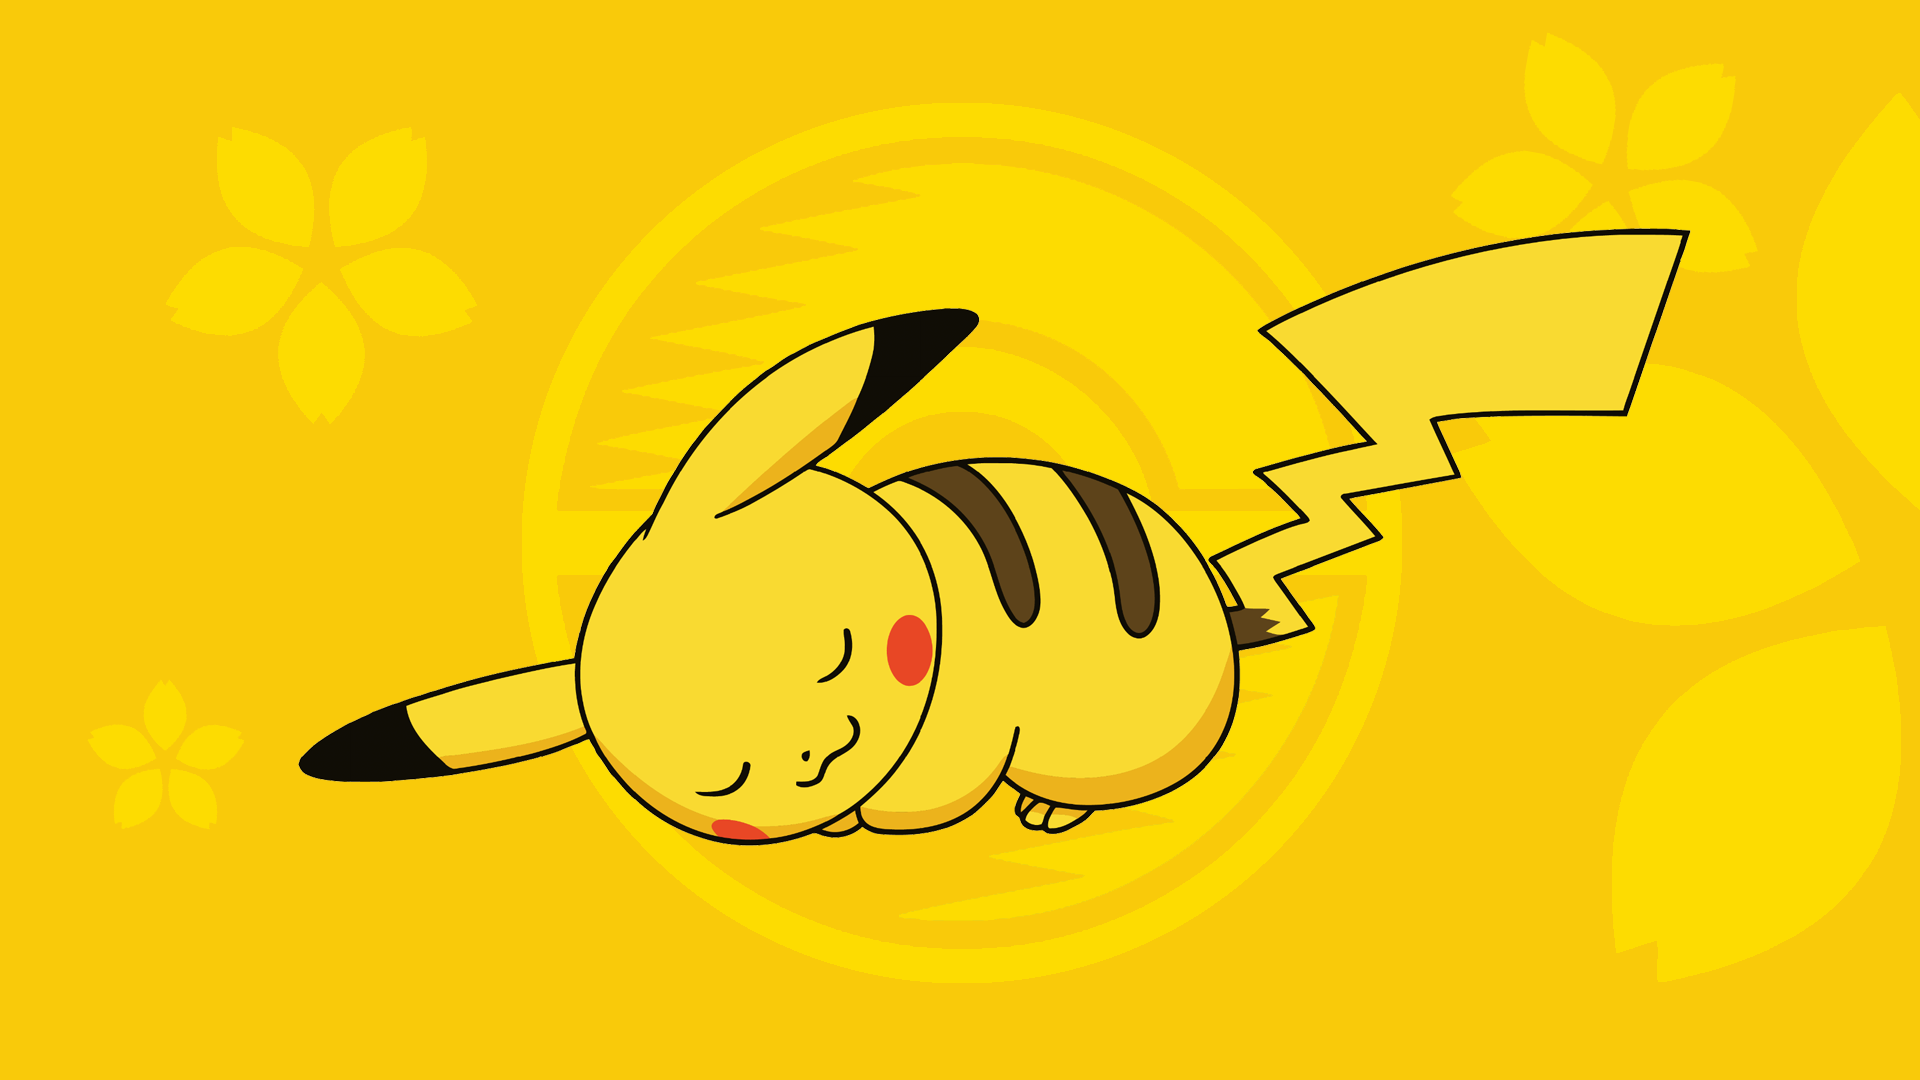 sfondi pikachu carino hd,giallo,cartone animato,pesce,illustrazione,clipart